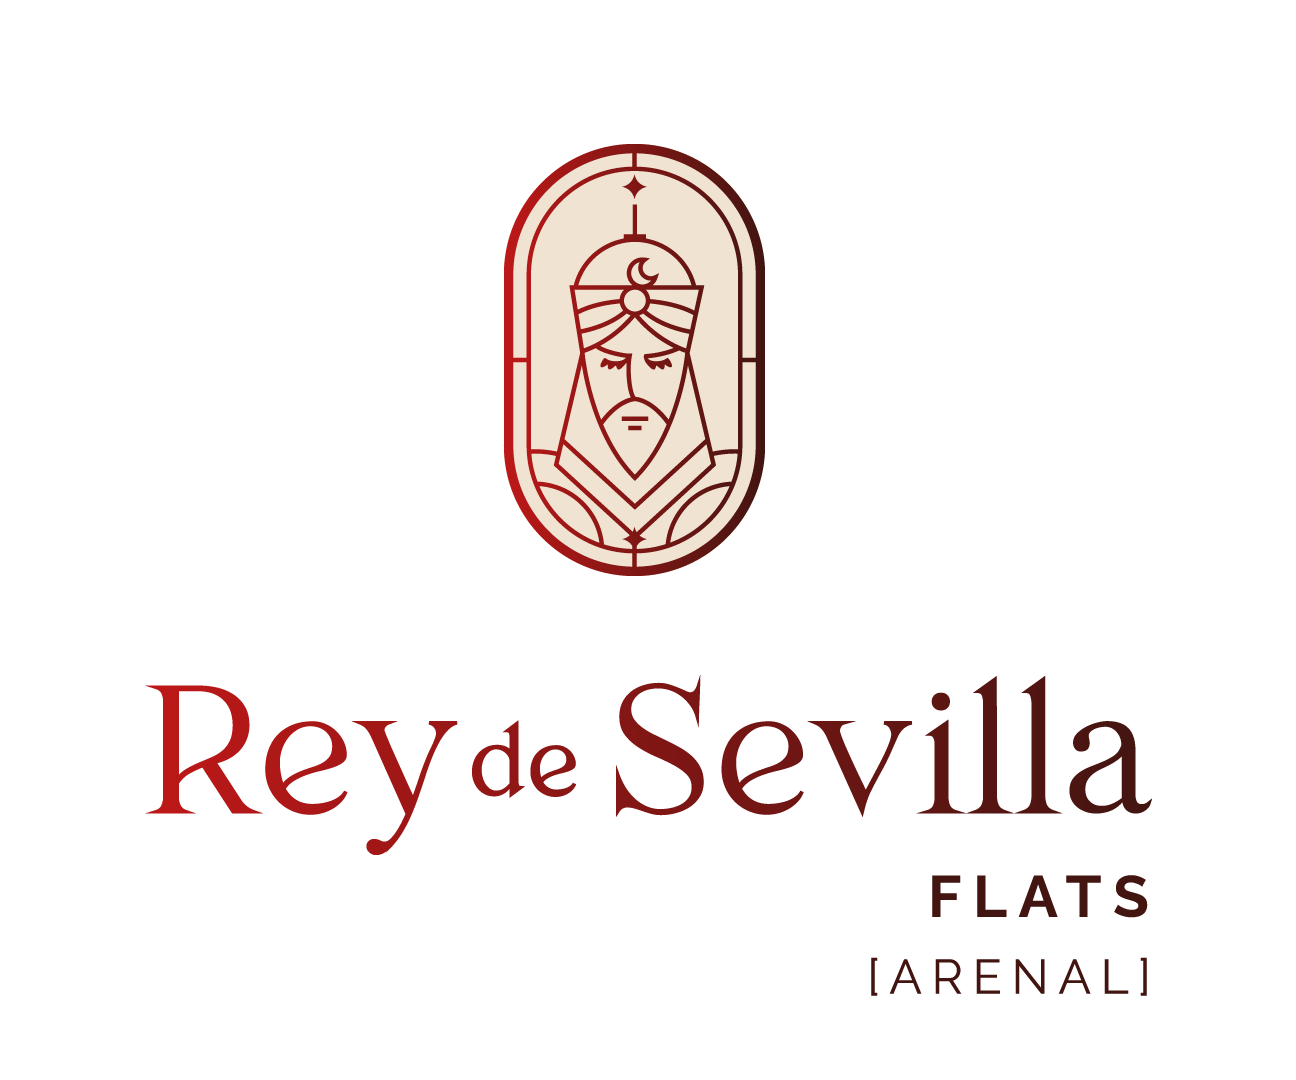 Rey de Sevilla Flats